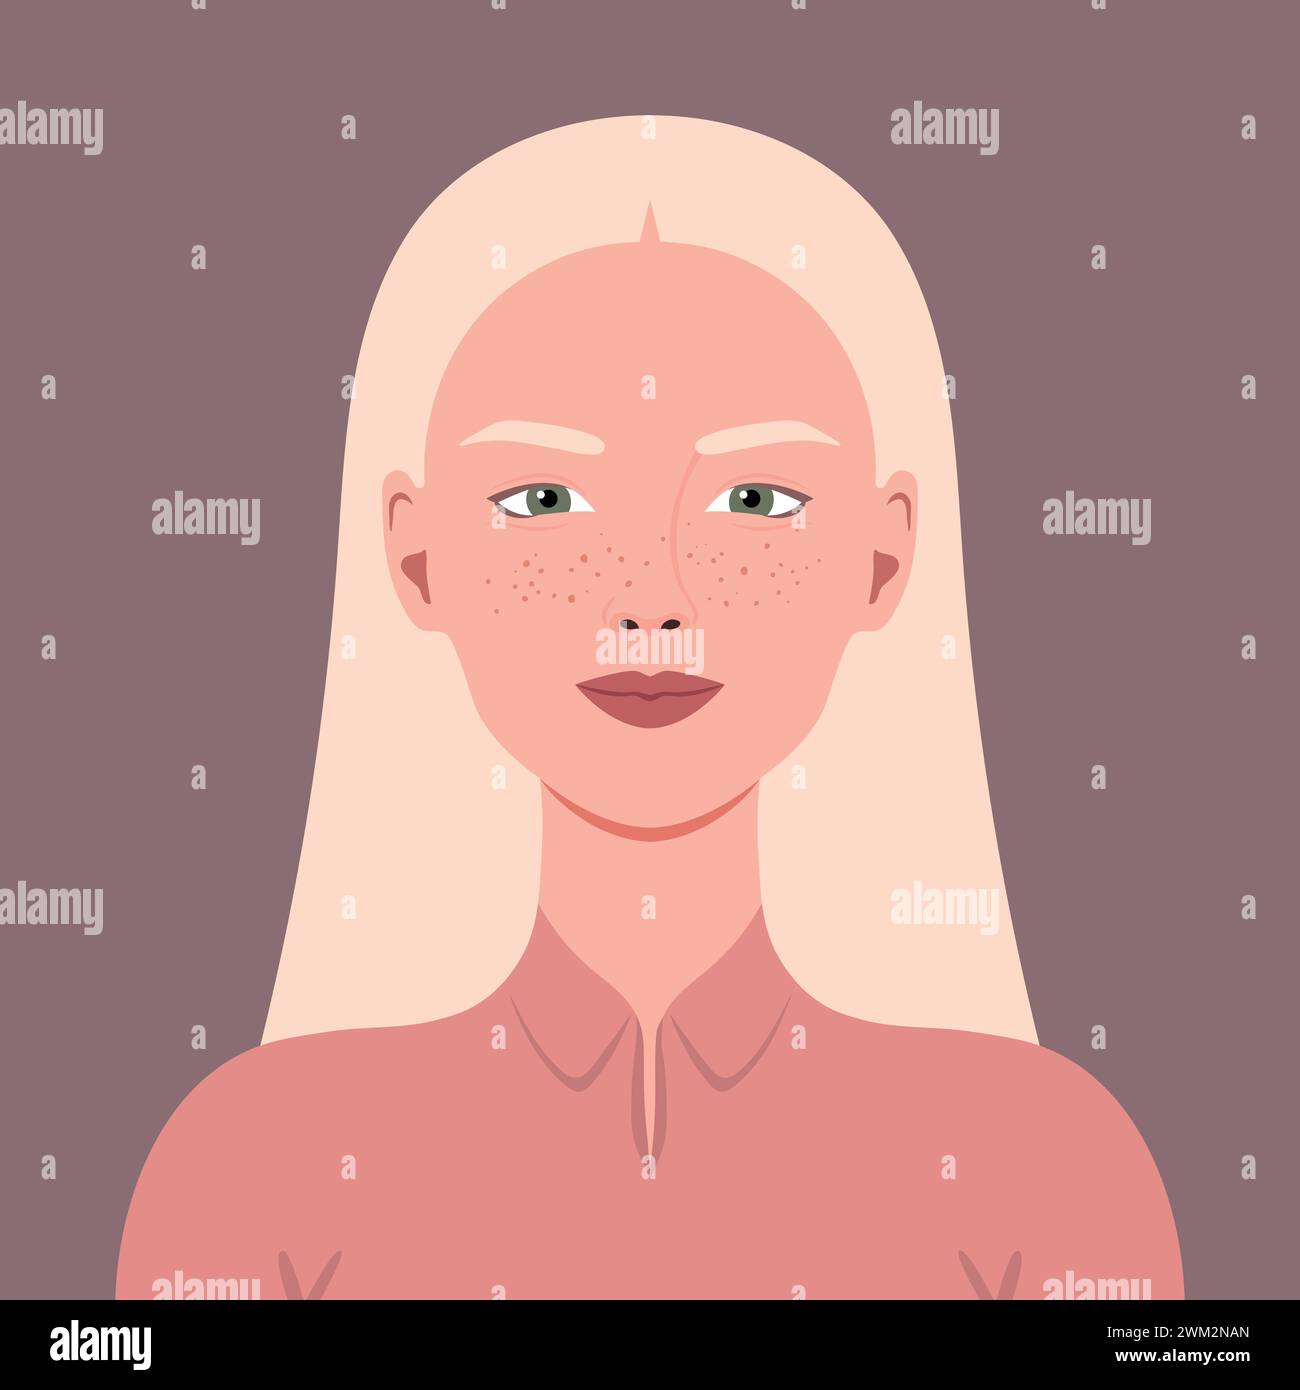 Ritratto di una giovane donna sorridente con capelli biondi e lentiggini. Avatar per i social media. Illustrazione vettoriale Illustrazione Vettoriale